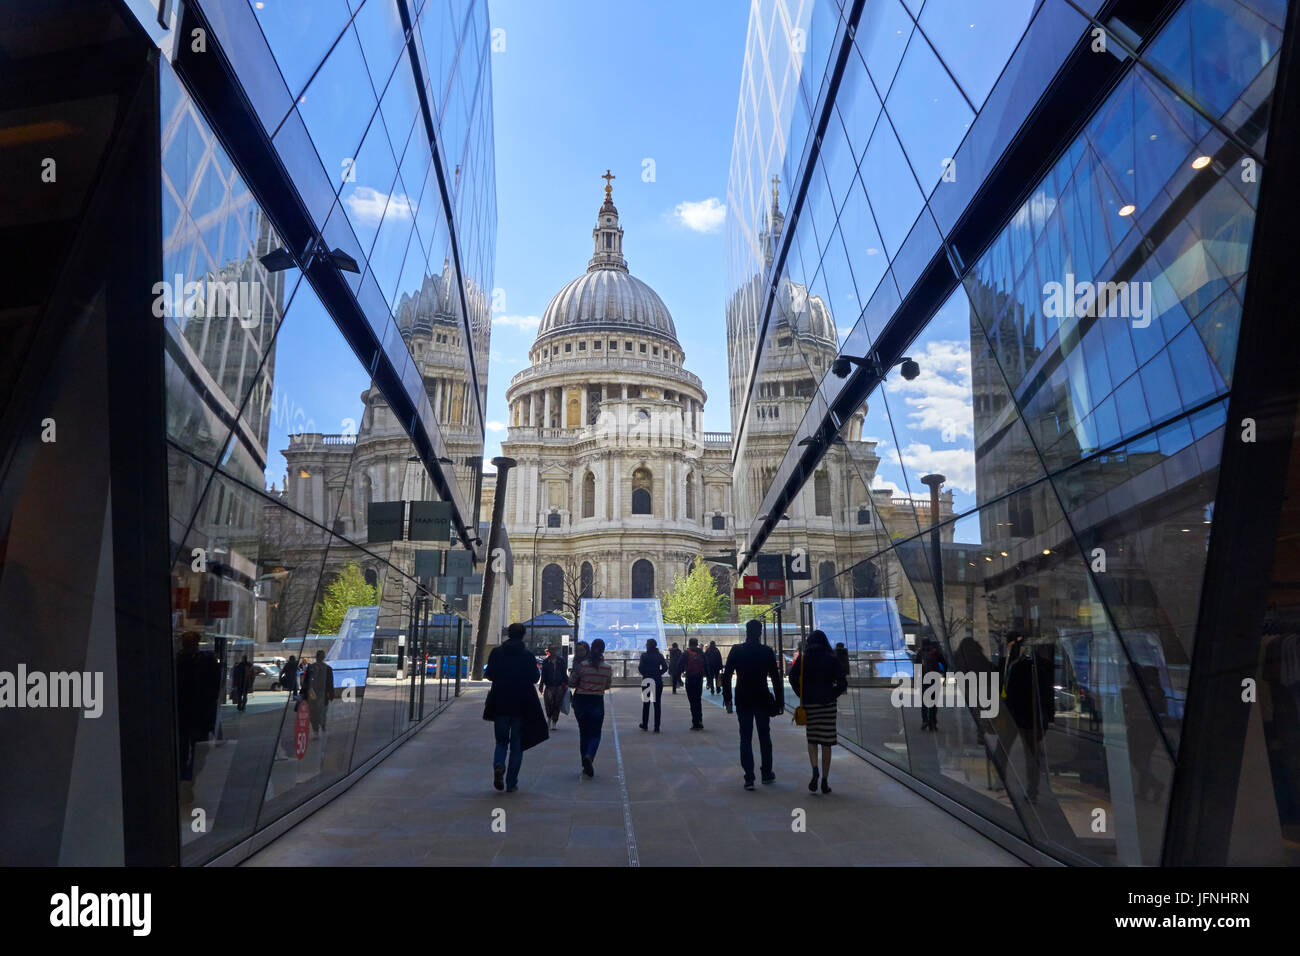 St. Pauls Cathedral spiegelt sich in eine neue Änderung Einkaufszentrum in Stadt von London, England, Vereinigtes Königreich, England, Großbritannien, GB Stockfoto